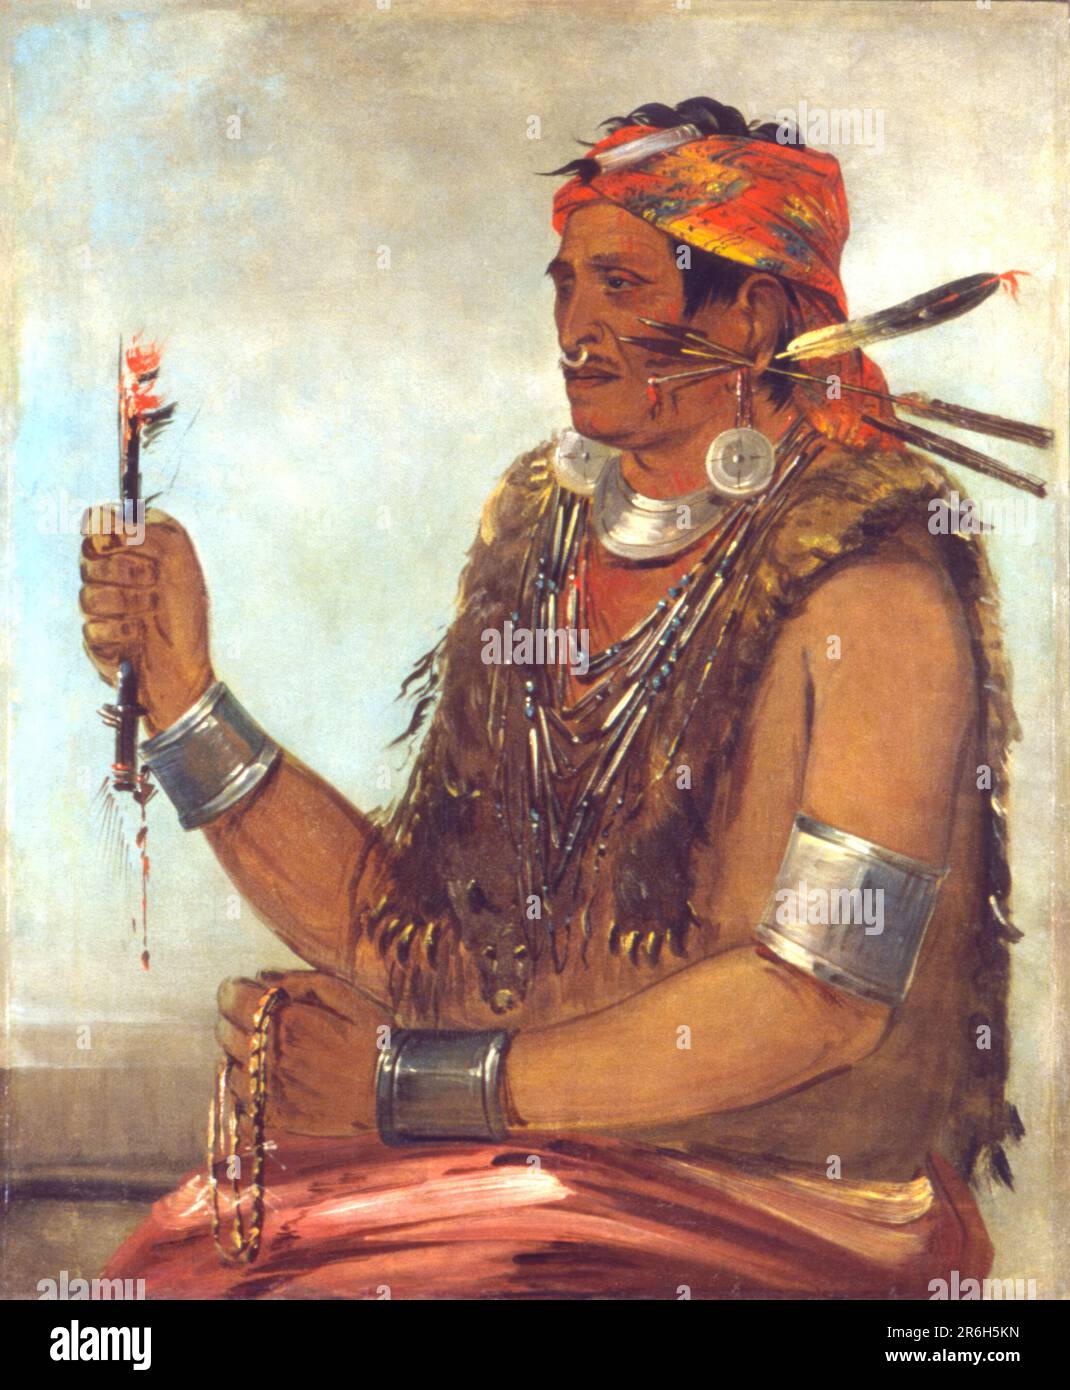 Ten-sqúat-a-Way, la porta aperta, conosciuta come il Profeta, Fratello di Tecumseh. olio su tela. Data: 1830. Museo: Smithsonian American Art Museum. Foto Stock